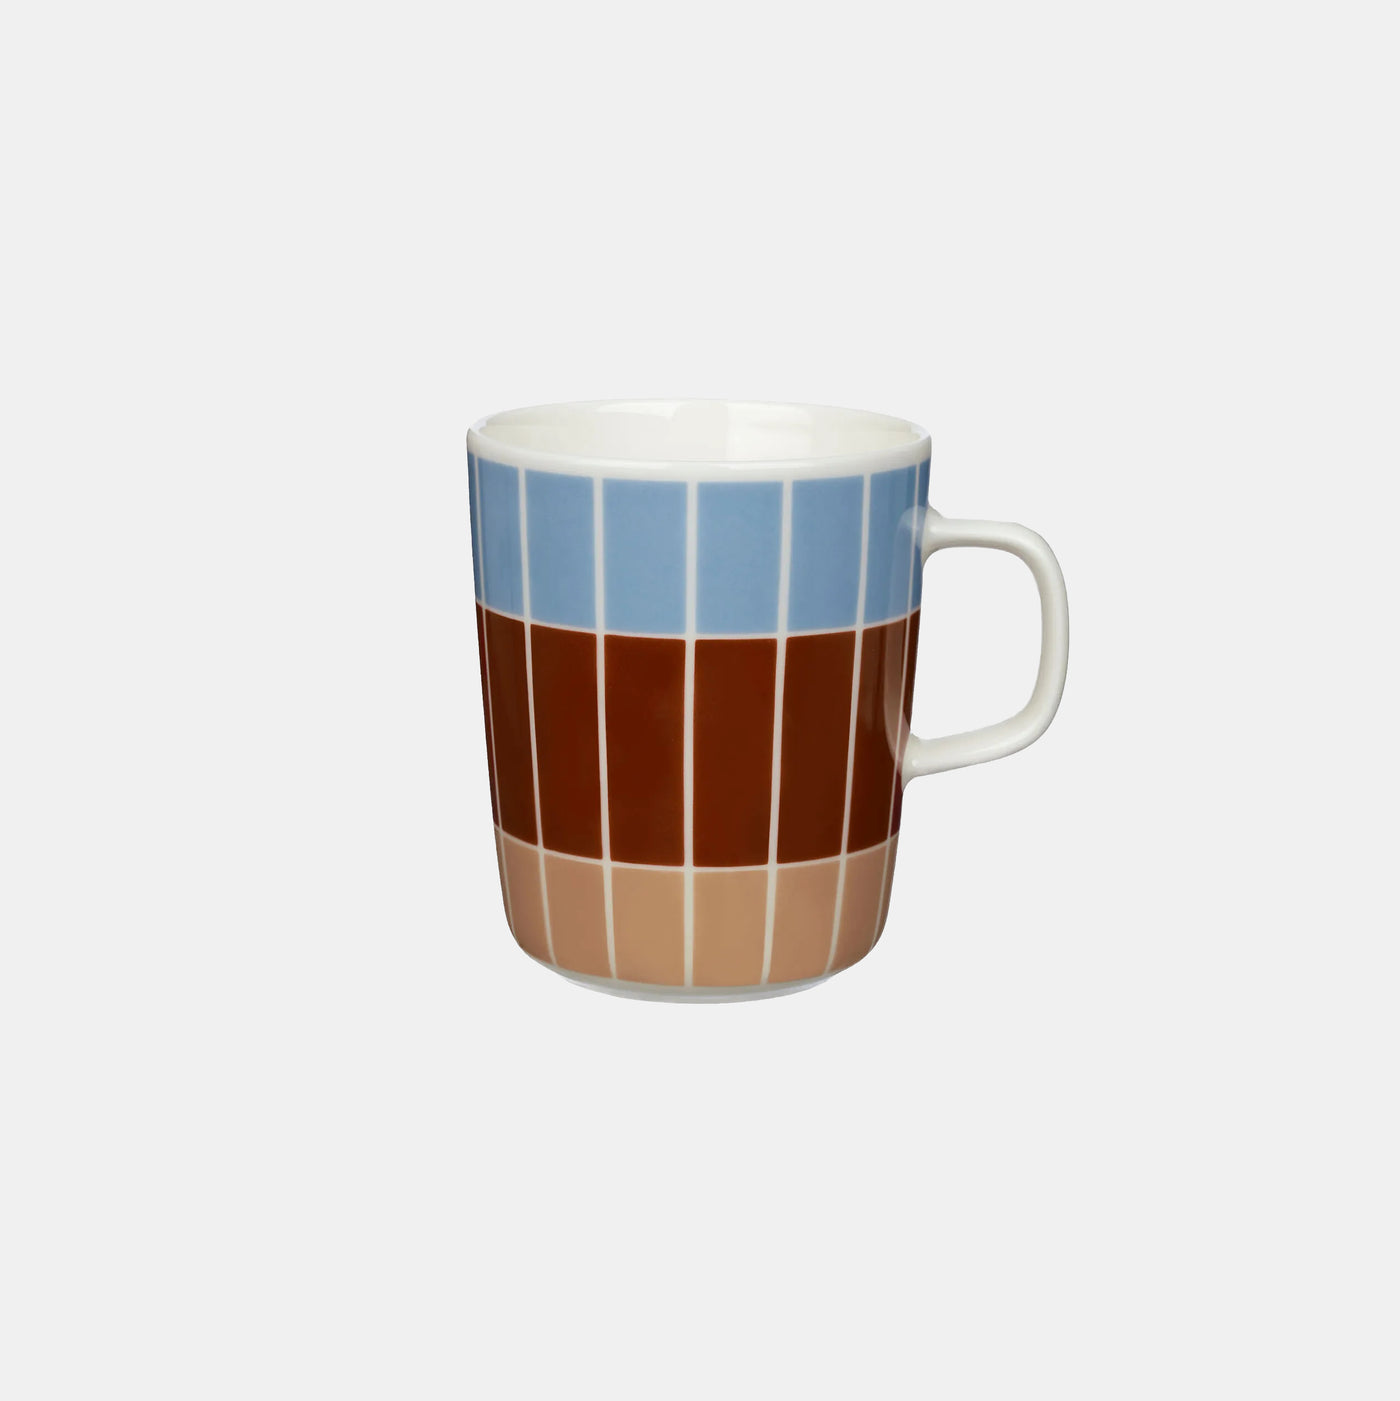 Oiva / Tiiliskivi Mug 2,5 Dl - Light blue, Brown